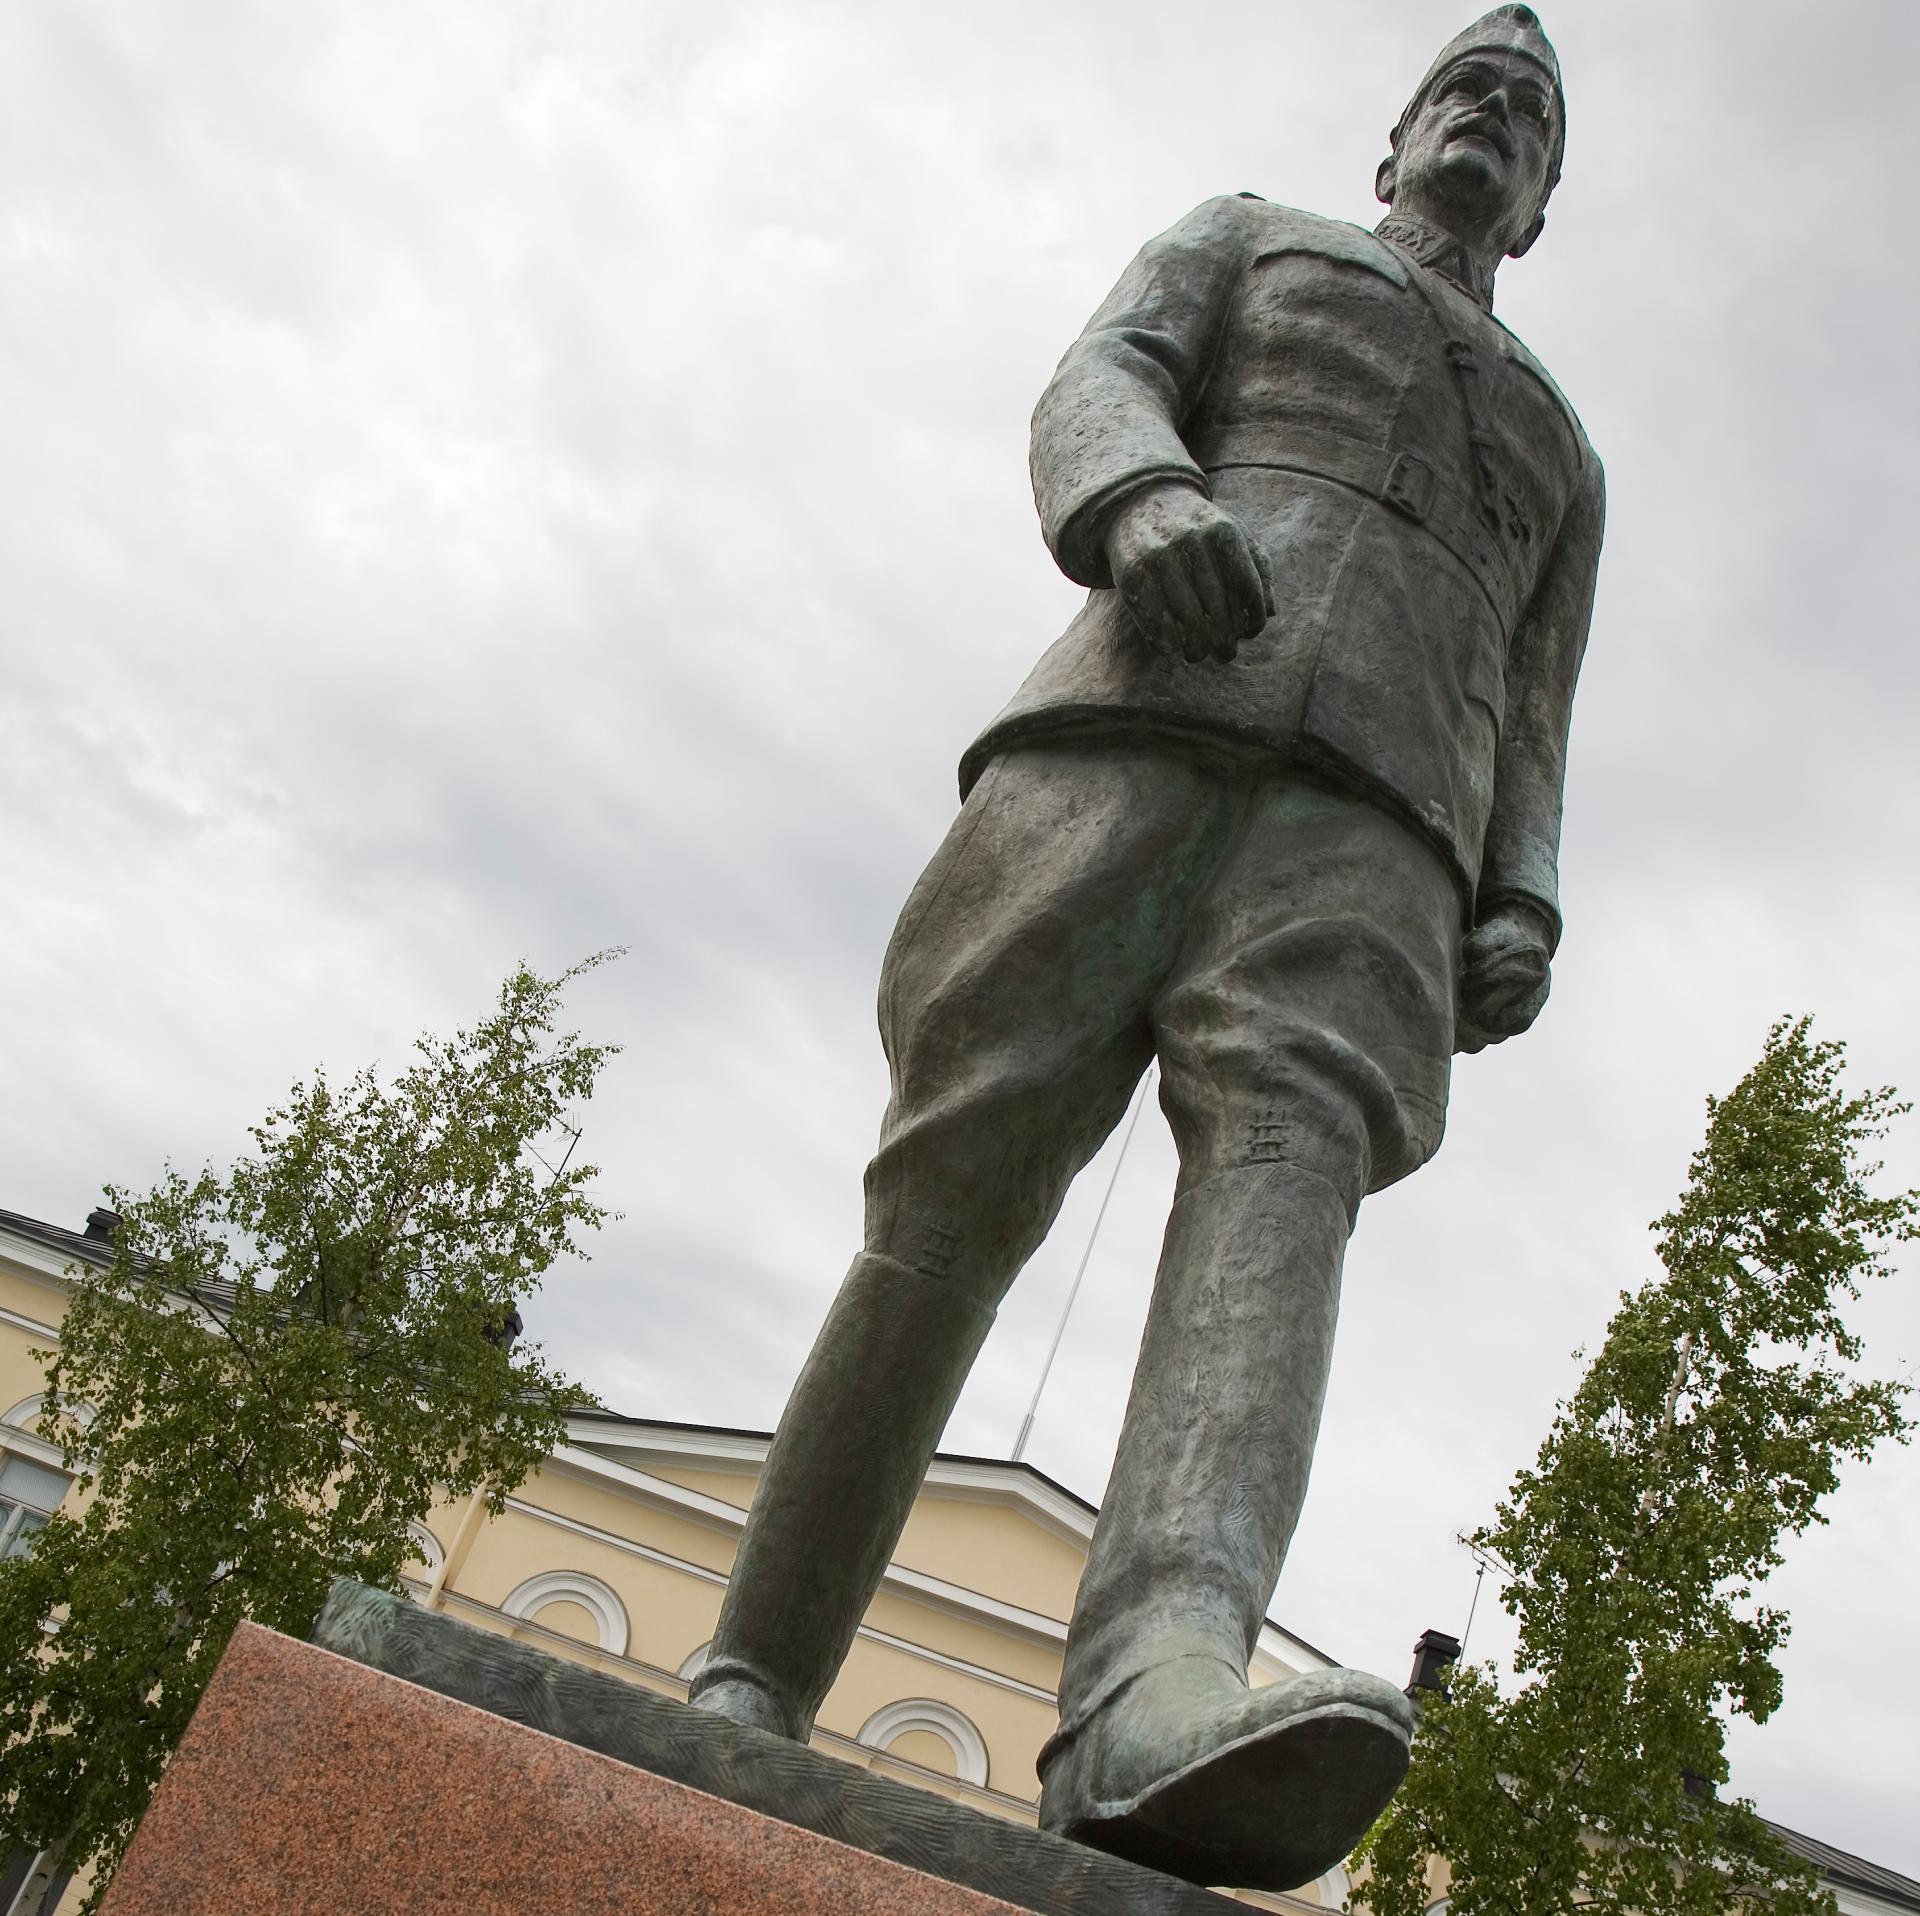 Marsalkka Mannerheimiä esittävä patsas Mikkelin torilla. 